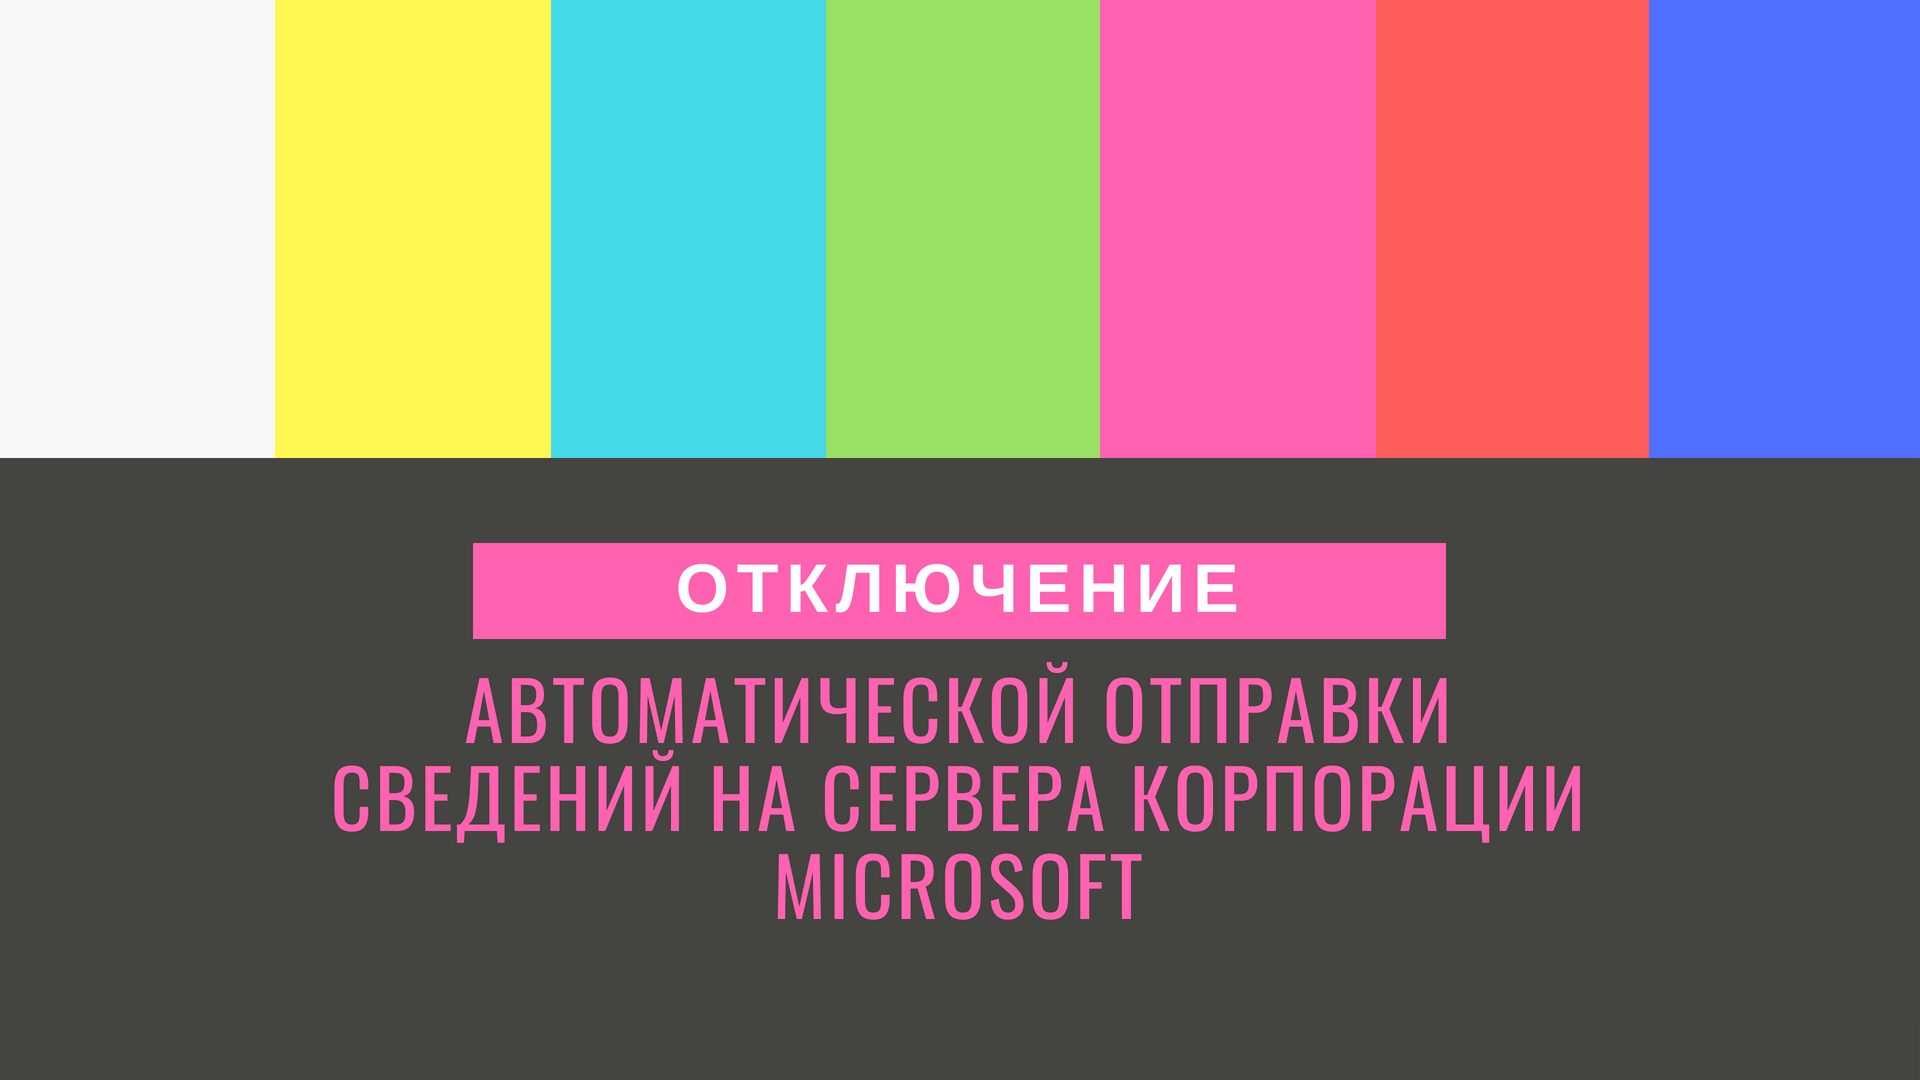 Отключение автоматической отправки сведений на сервера корпорации Microsoft